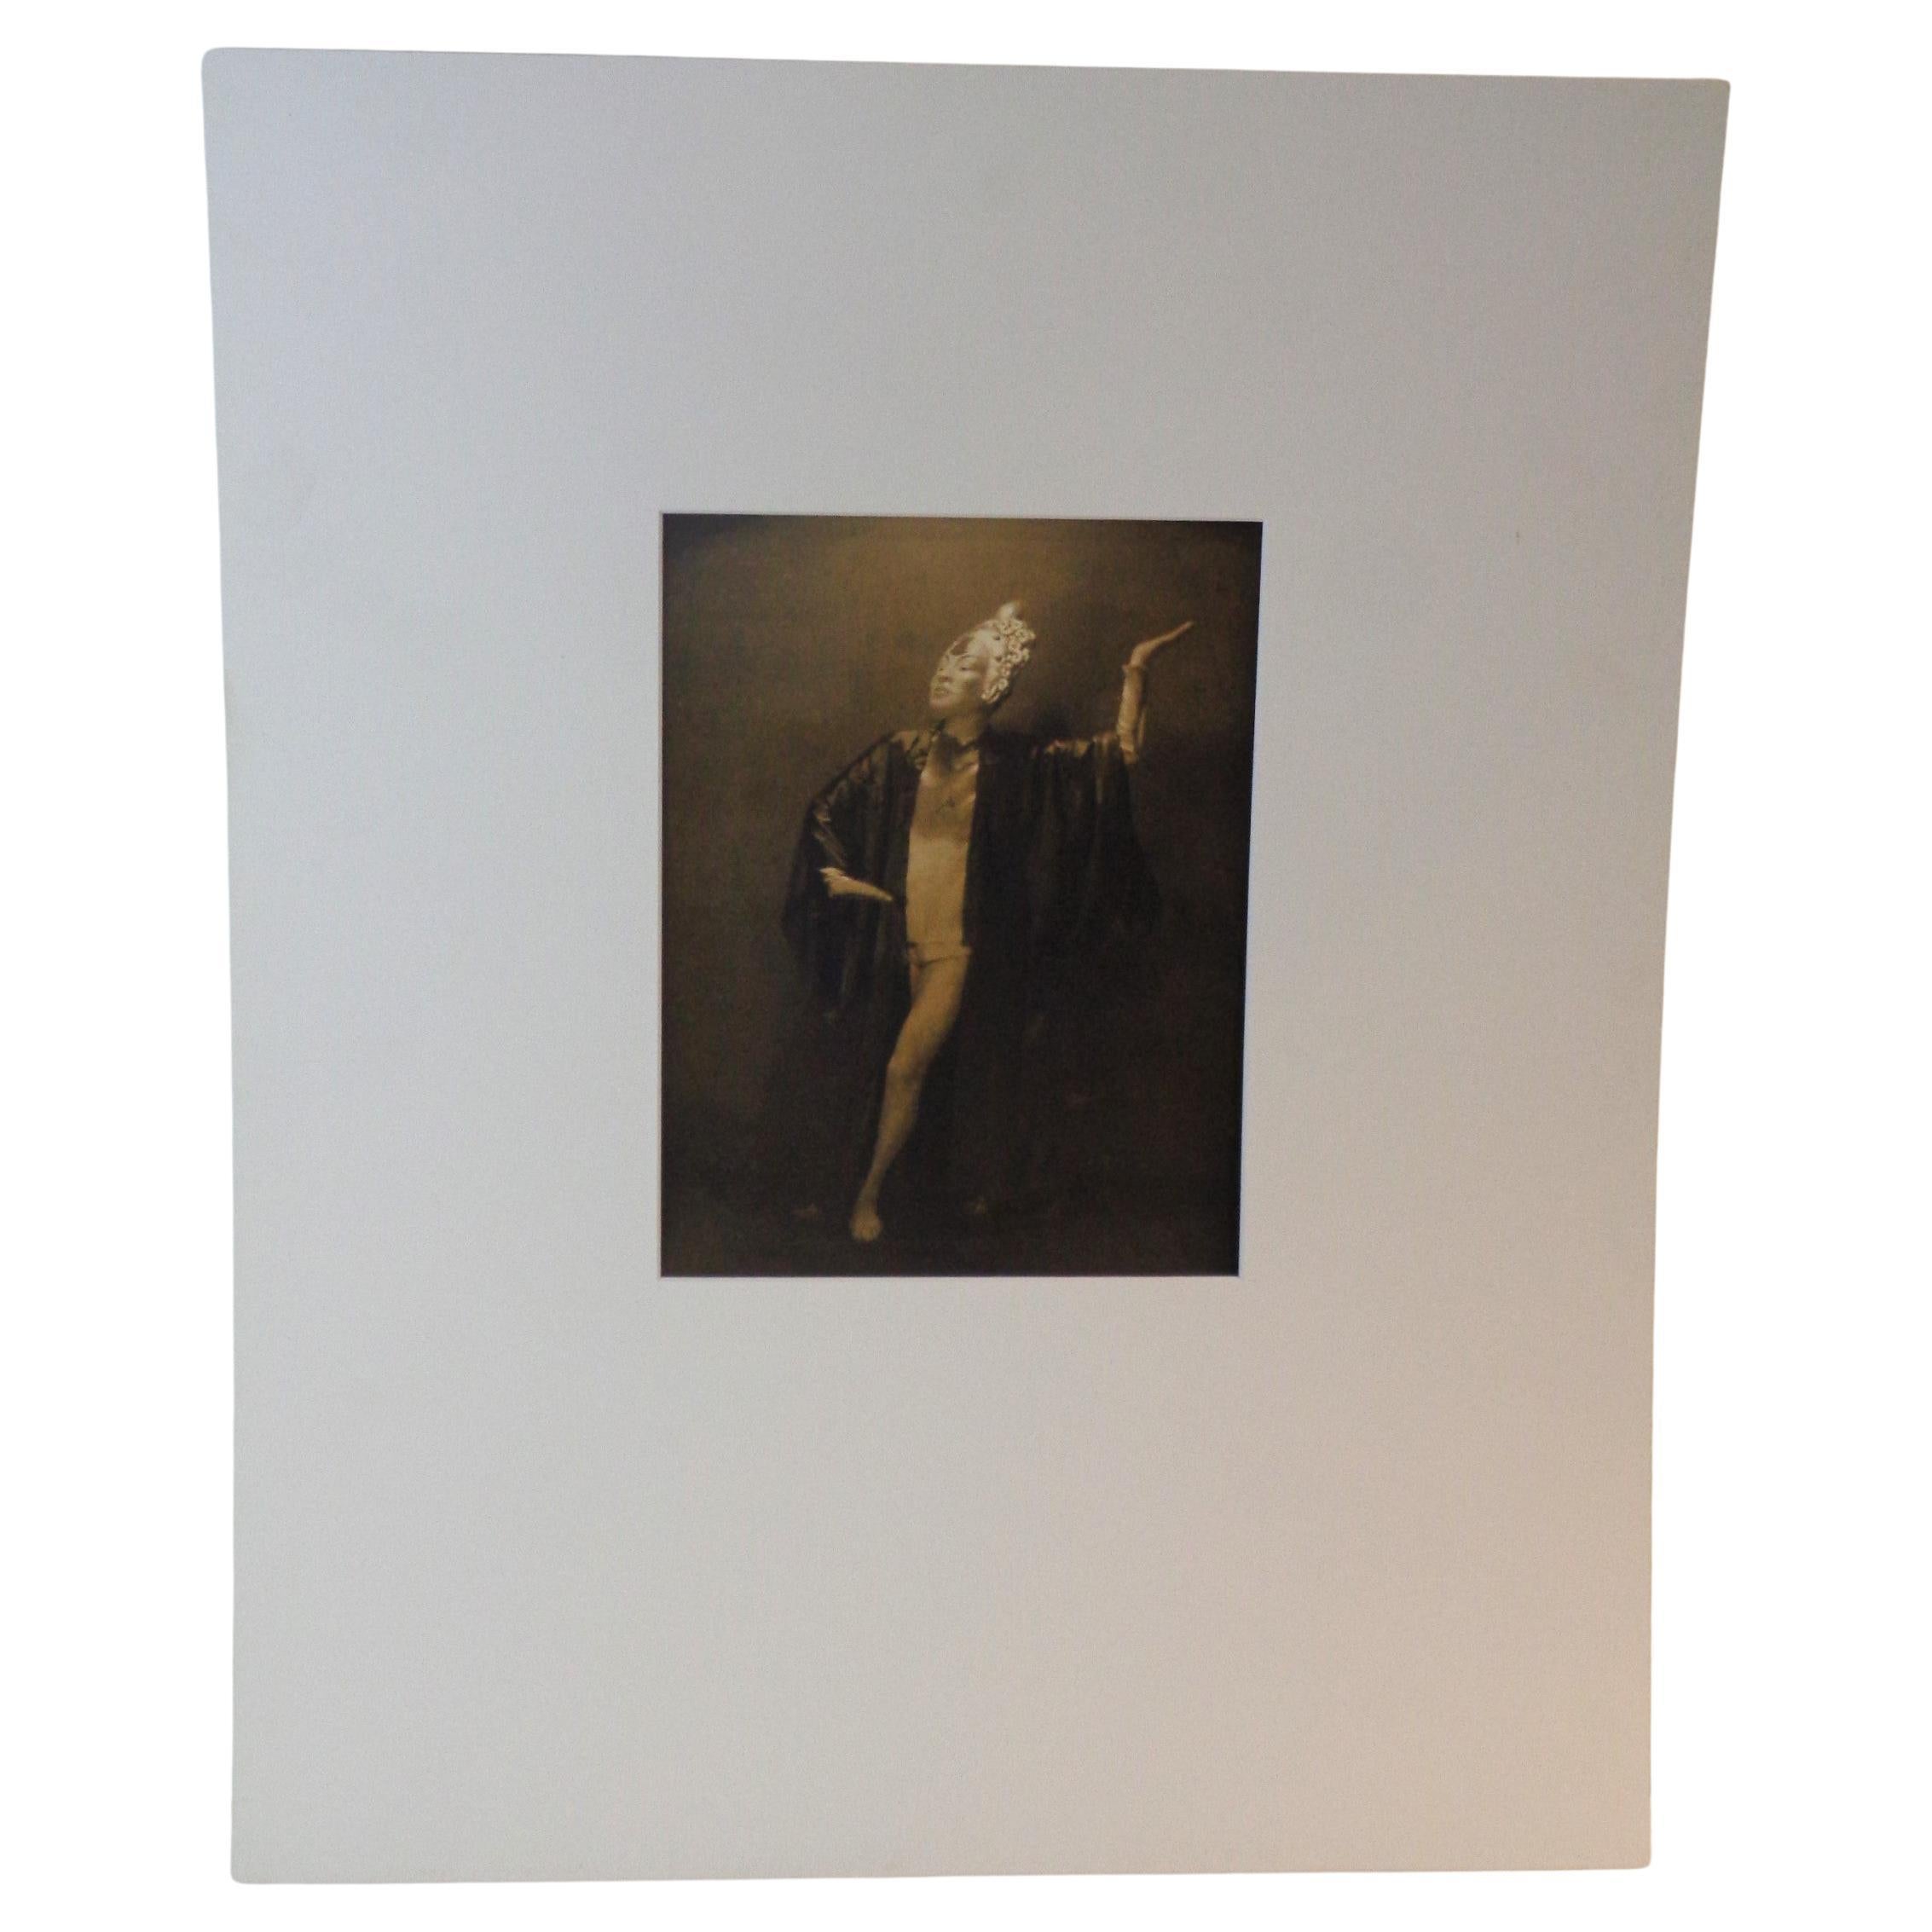 Frühe original pictorialist sepia tone gelatin silver print Foto einer exotisch kostümierten Tänzerin von Rochester NY Fotograf Ned Hungerford, circa 1900-1910. Matte Größe 20